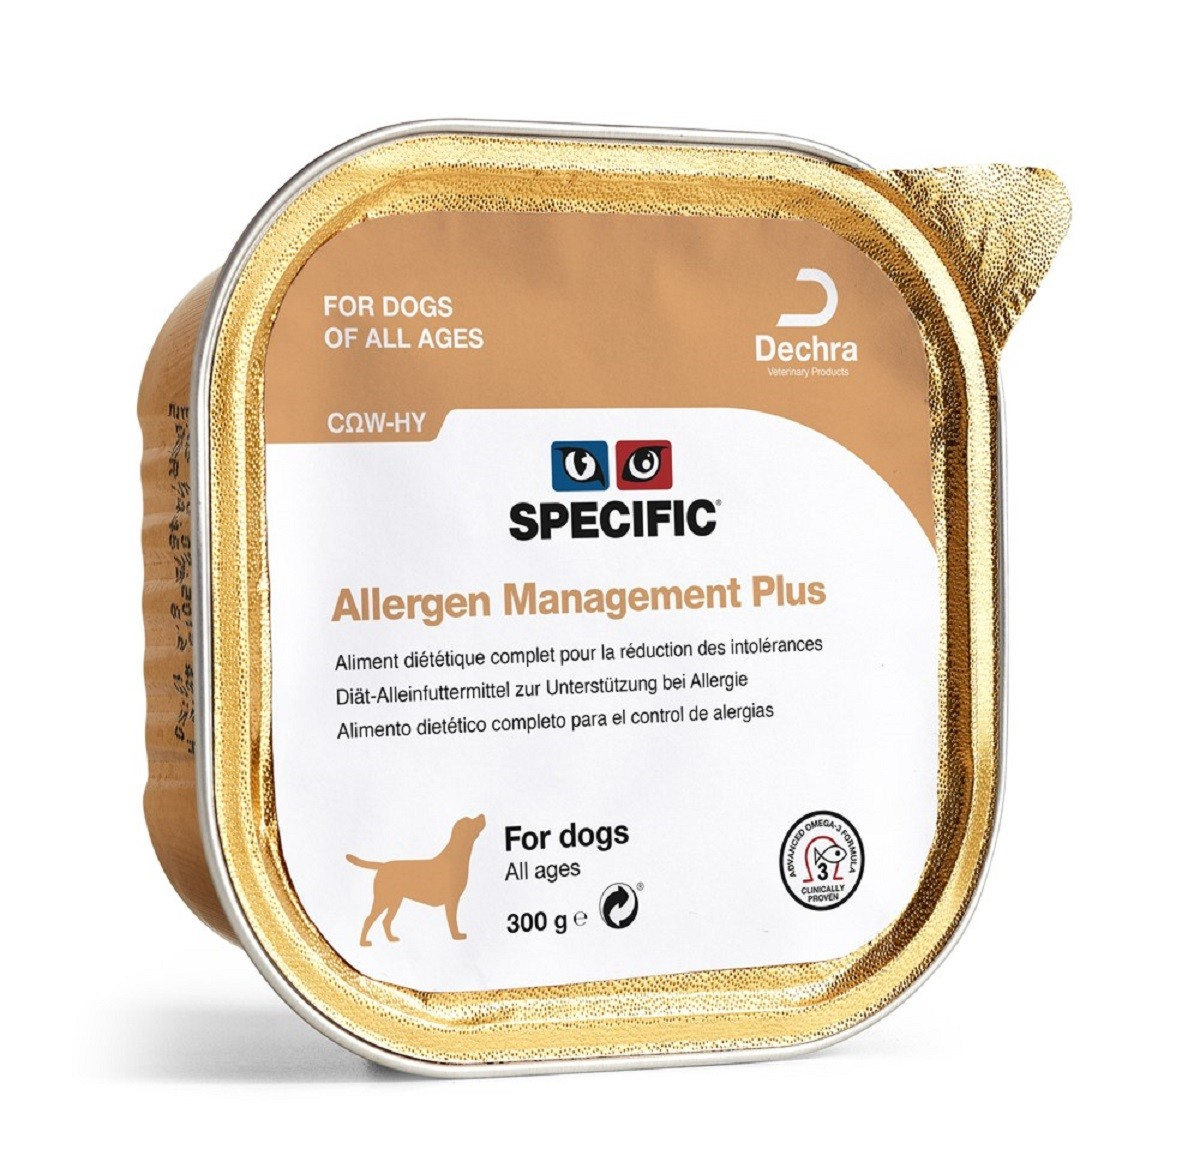 Pack de 6 tarrinas SPECIFIC Allergen Management Plus alimento húmedo para perros y cachorros